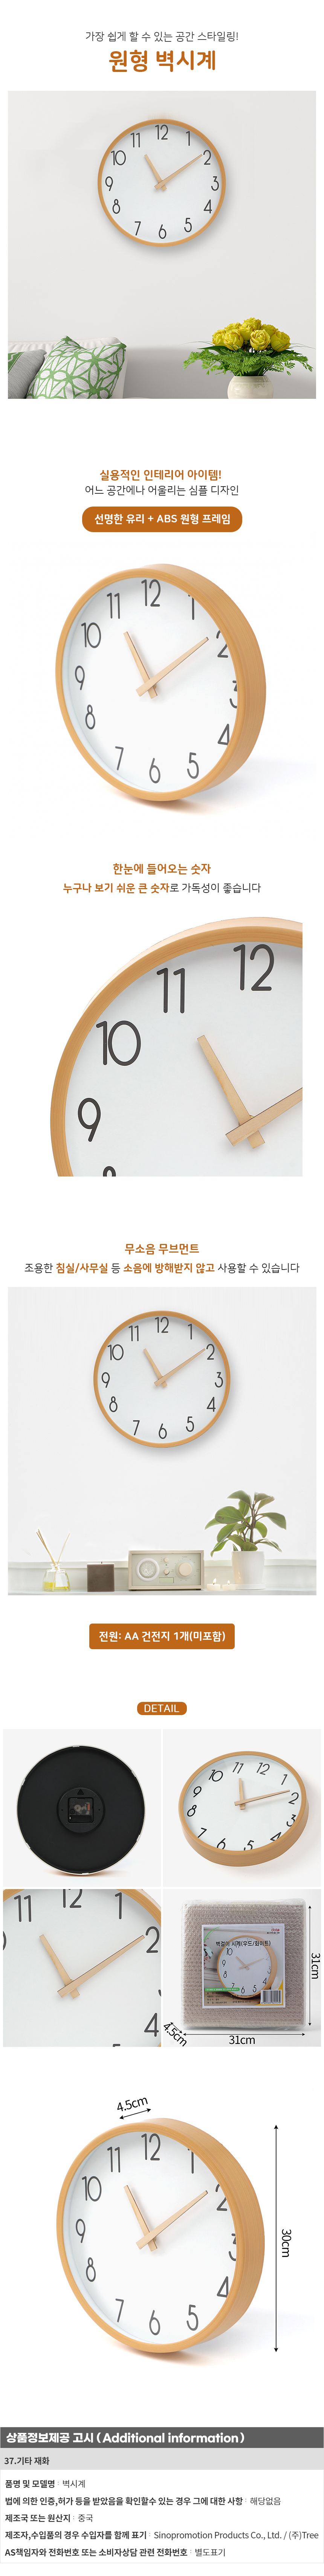 원형 벽시계 30cm 은행 기업 로고 인쇄 벽걸이 시계